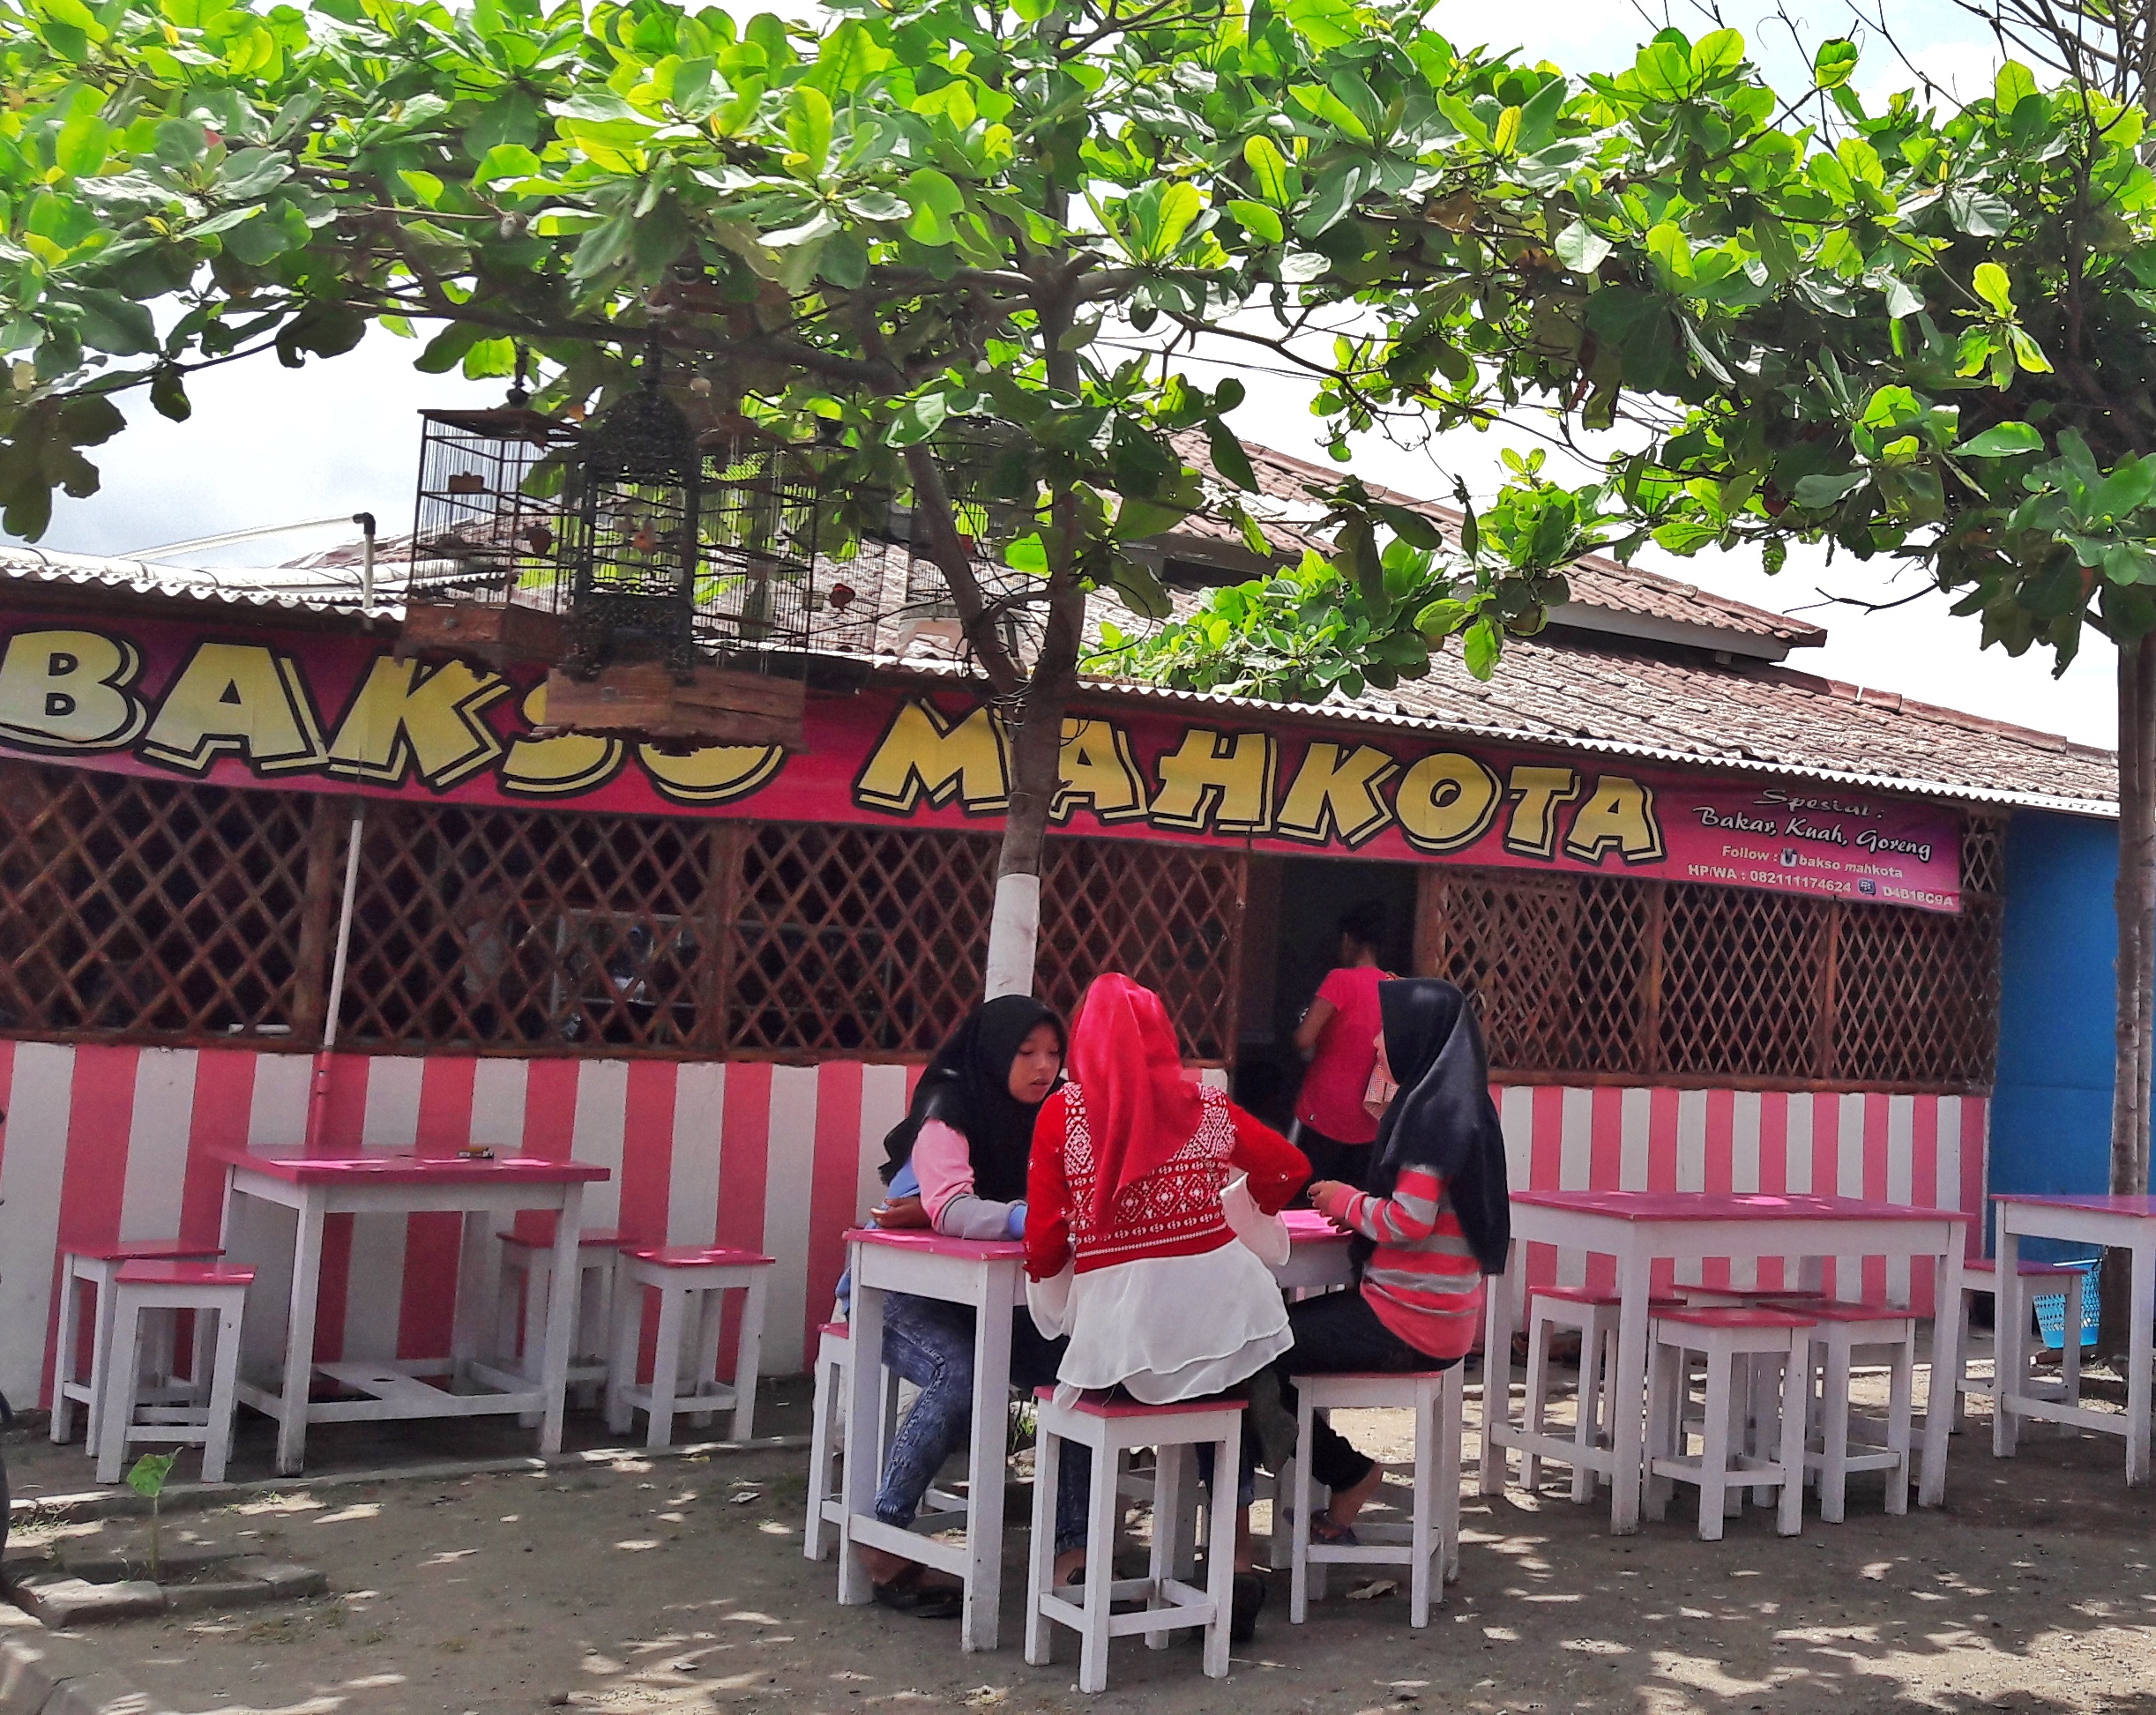 Wisata Kuliner Bakso Mahkota Yang Populer Di Pantai Parangtritis Yogyakarta